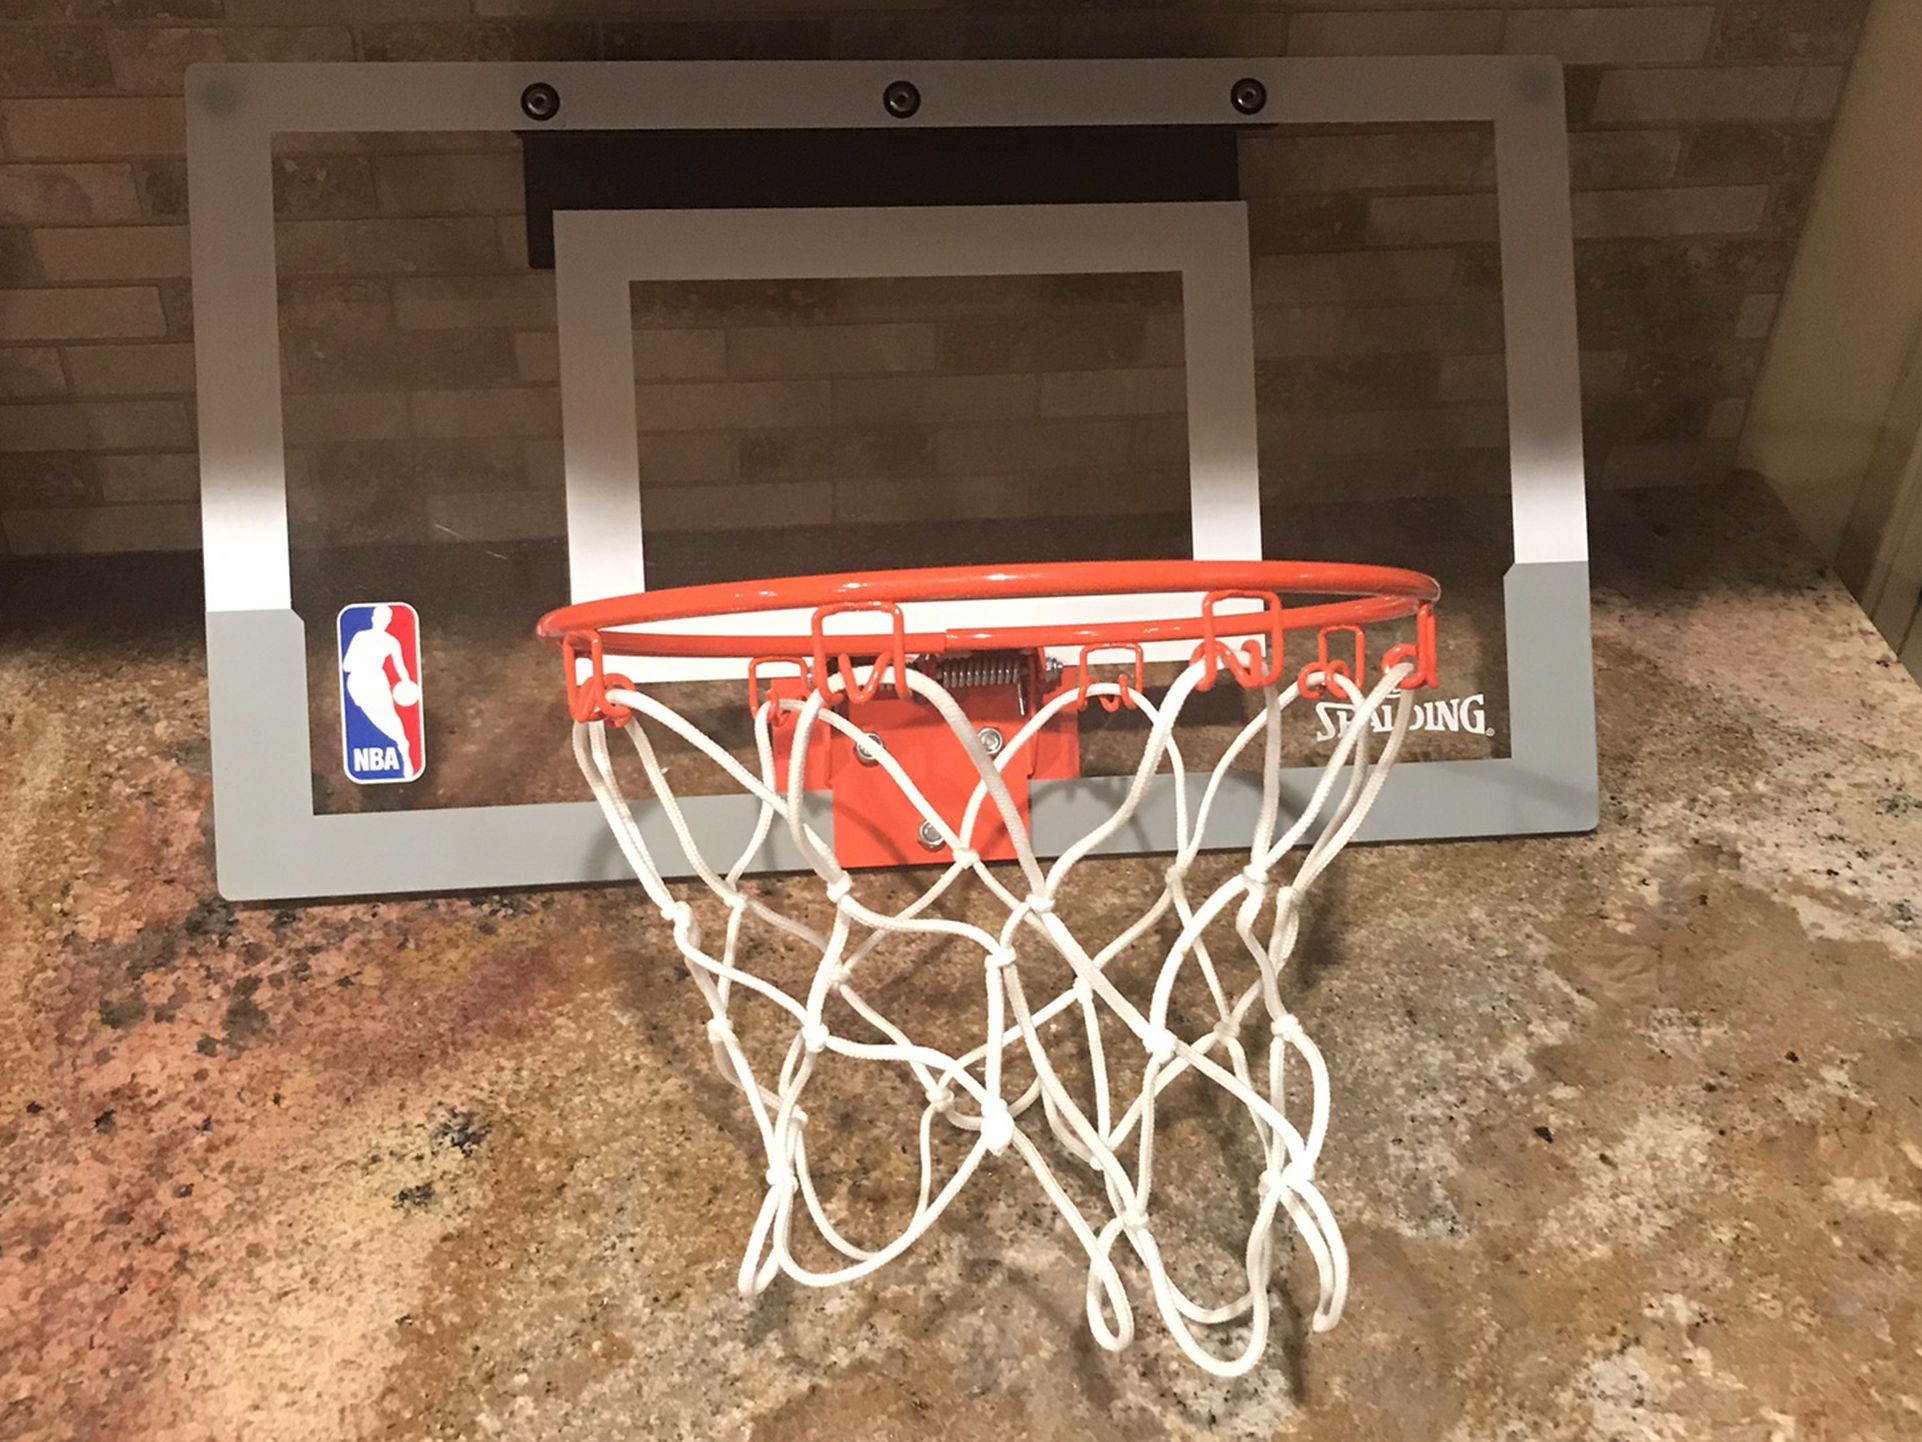 Spaulding Over the Door Basketball Hoop